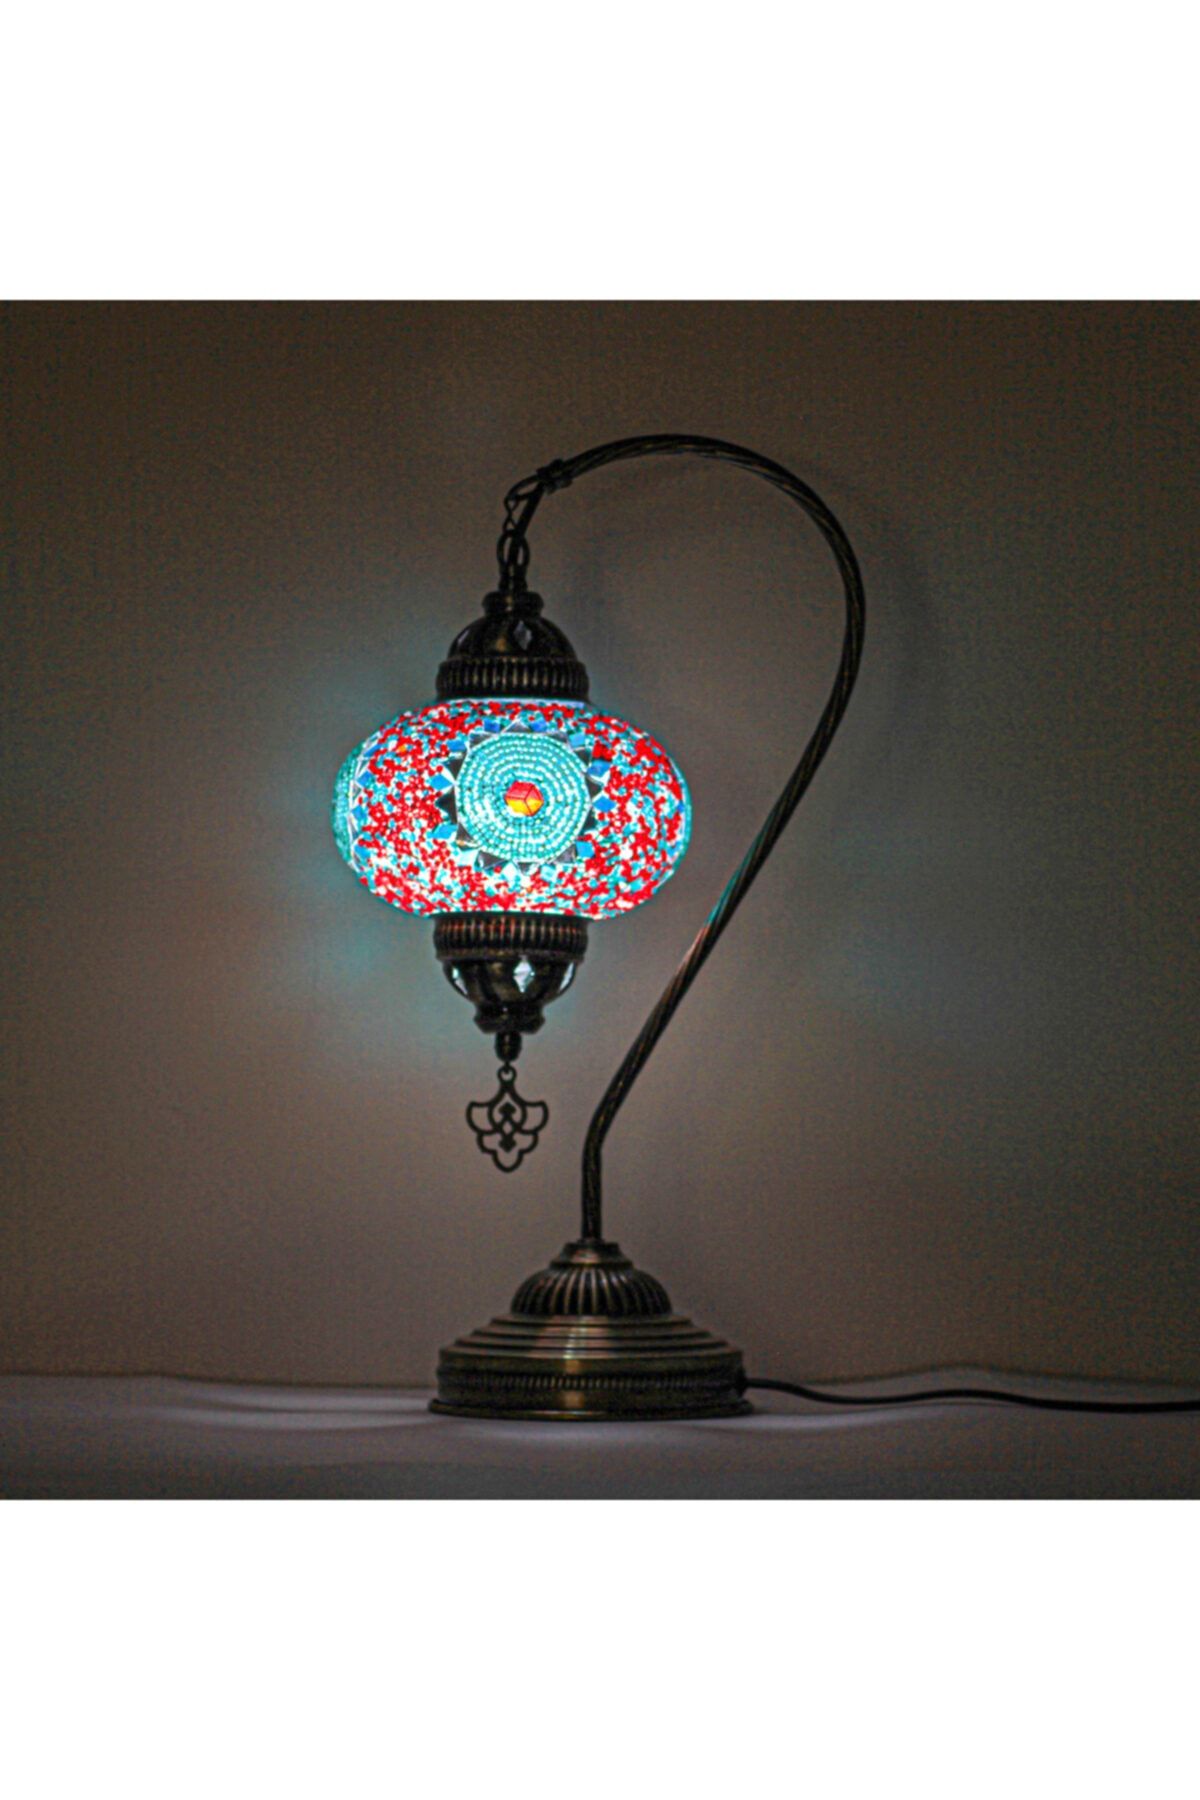 Koala Masaüstü Mozaik Lamba, Mozaik Gece Lambası, El Yapımı Otantik Mozaik Osmanlı Lambası